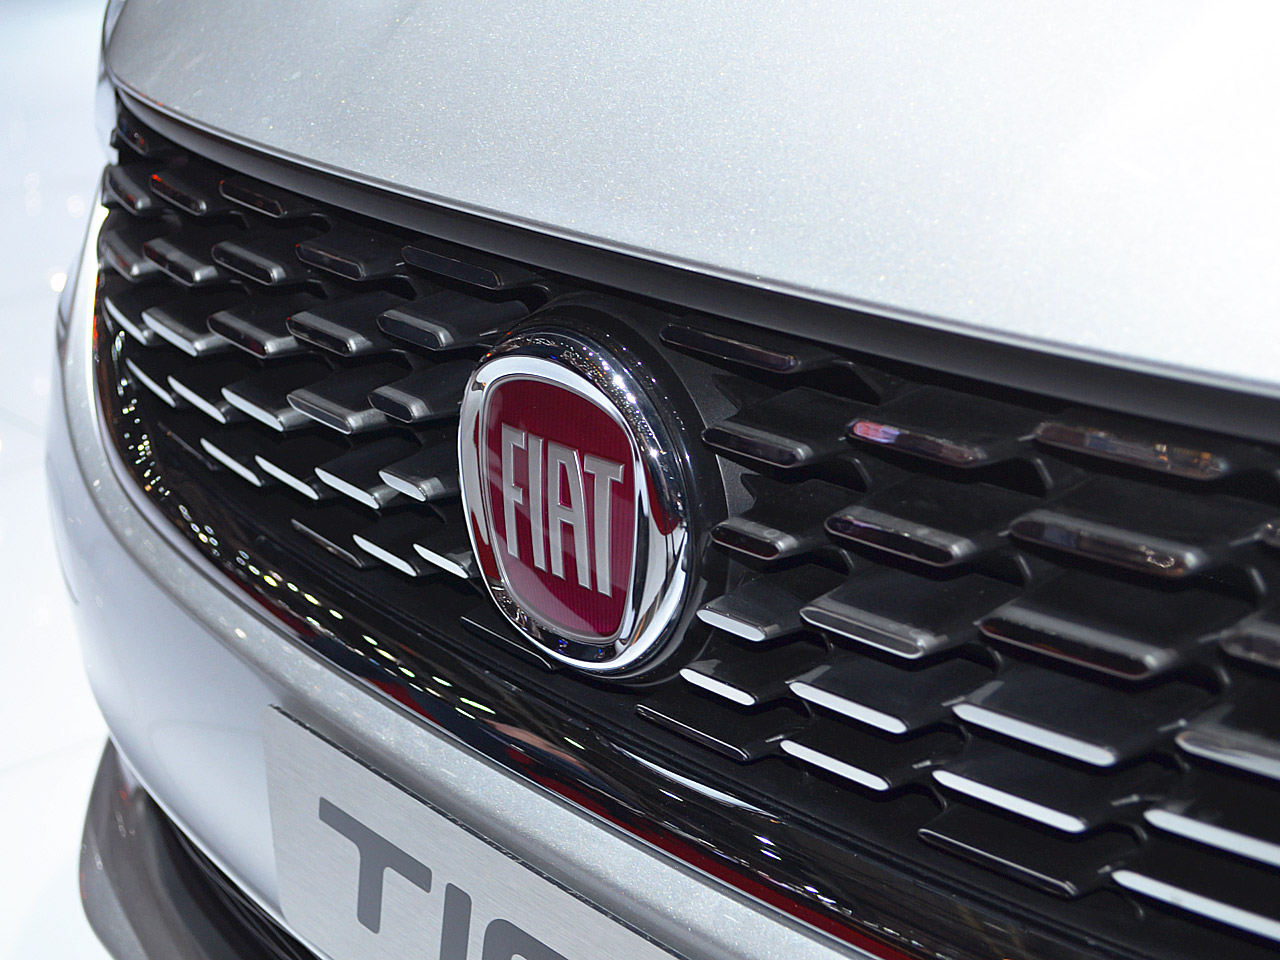 Fiat Tipo geht mit erweiterter Serienausstattung ins Jahr 2019